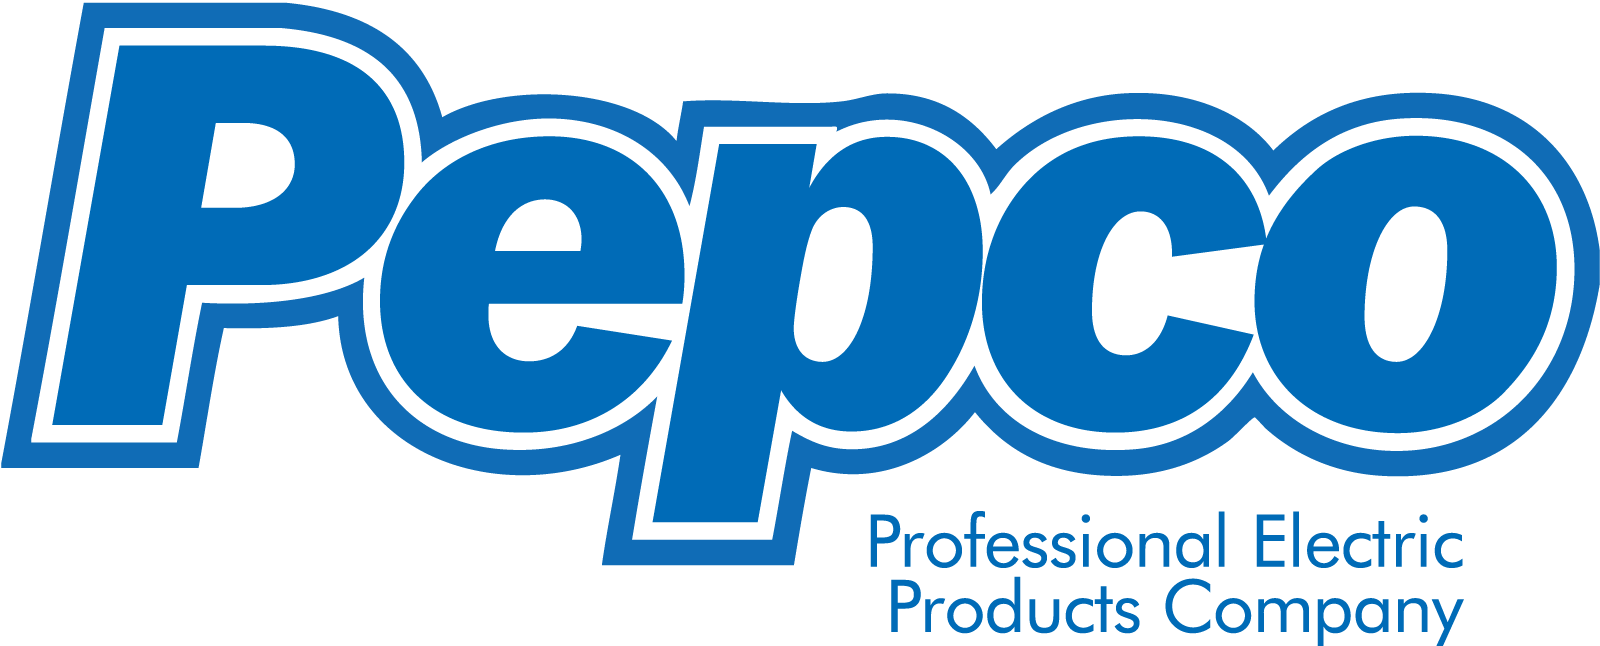 Pepco Logo